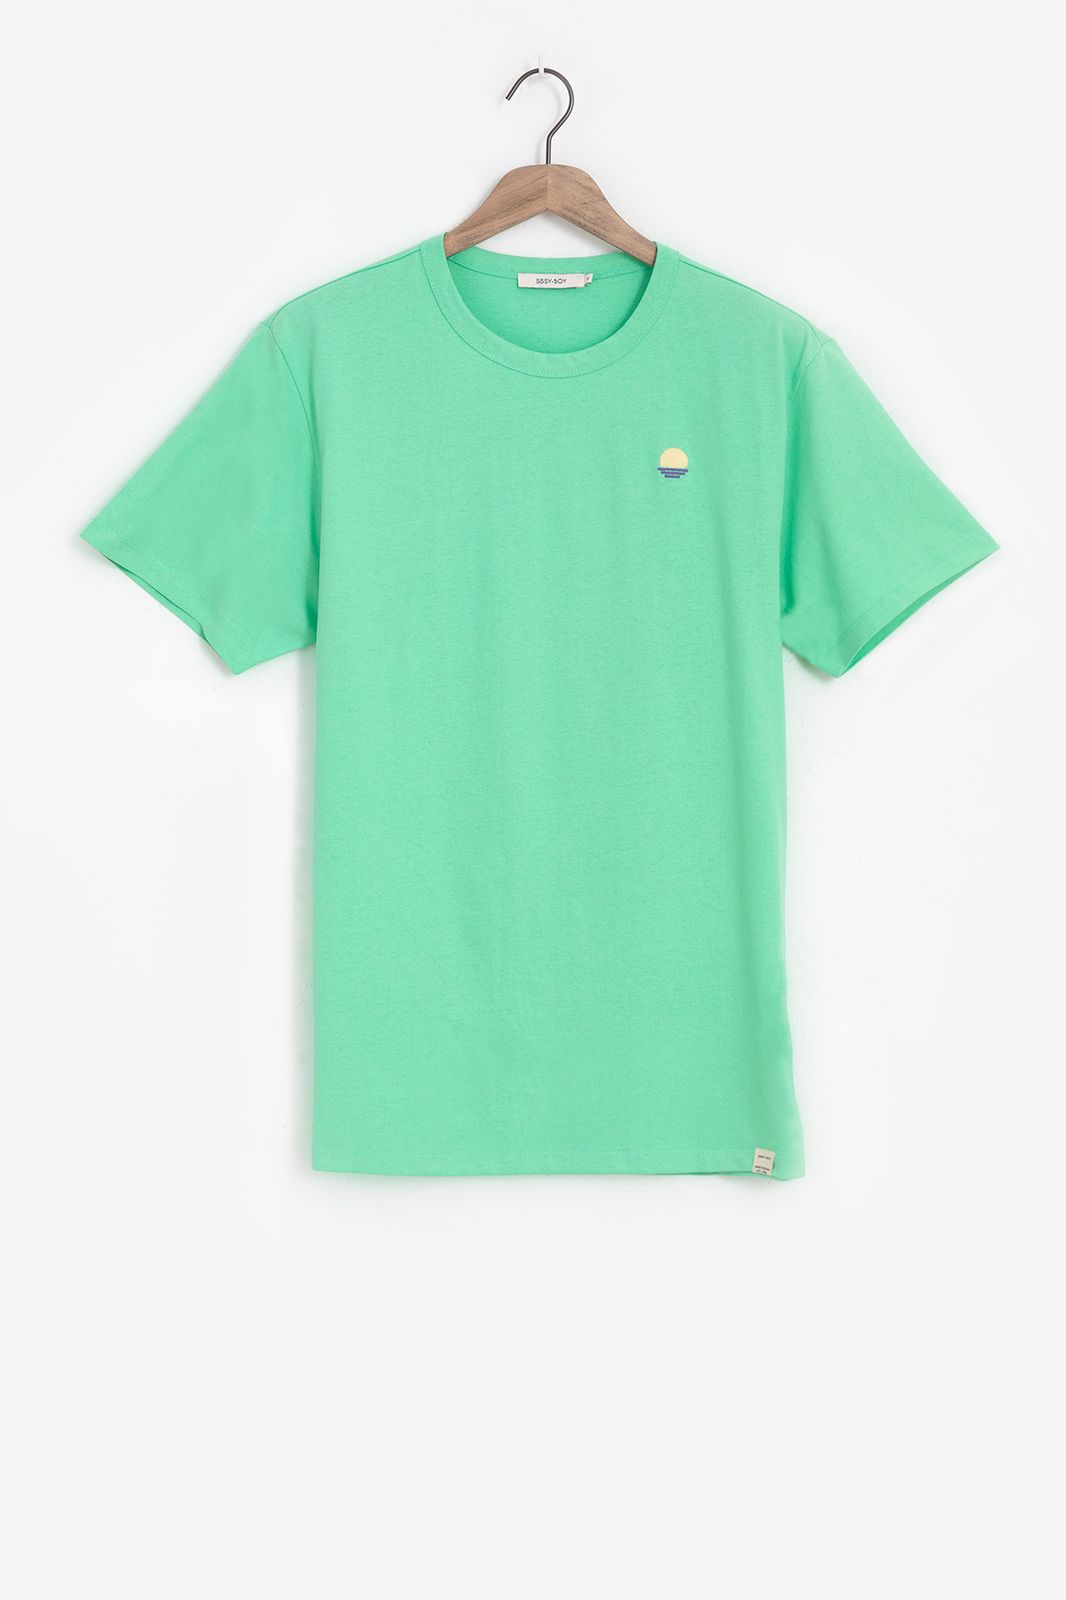 Baumwoll-Shirt mit Stickerei - grün